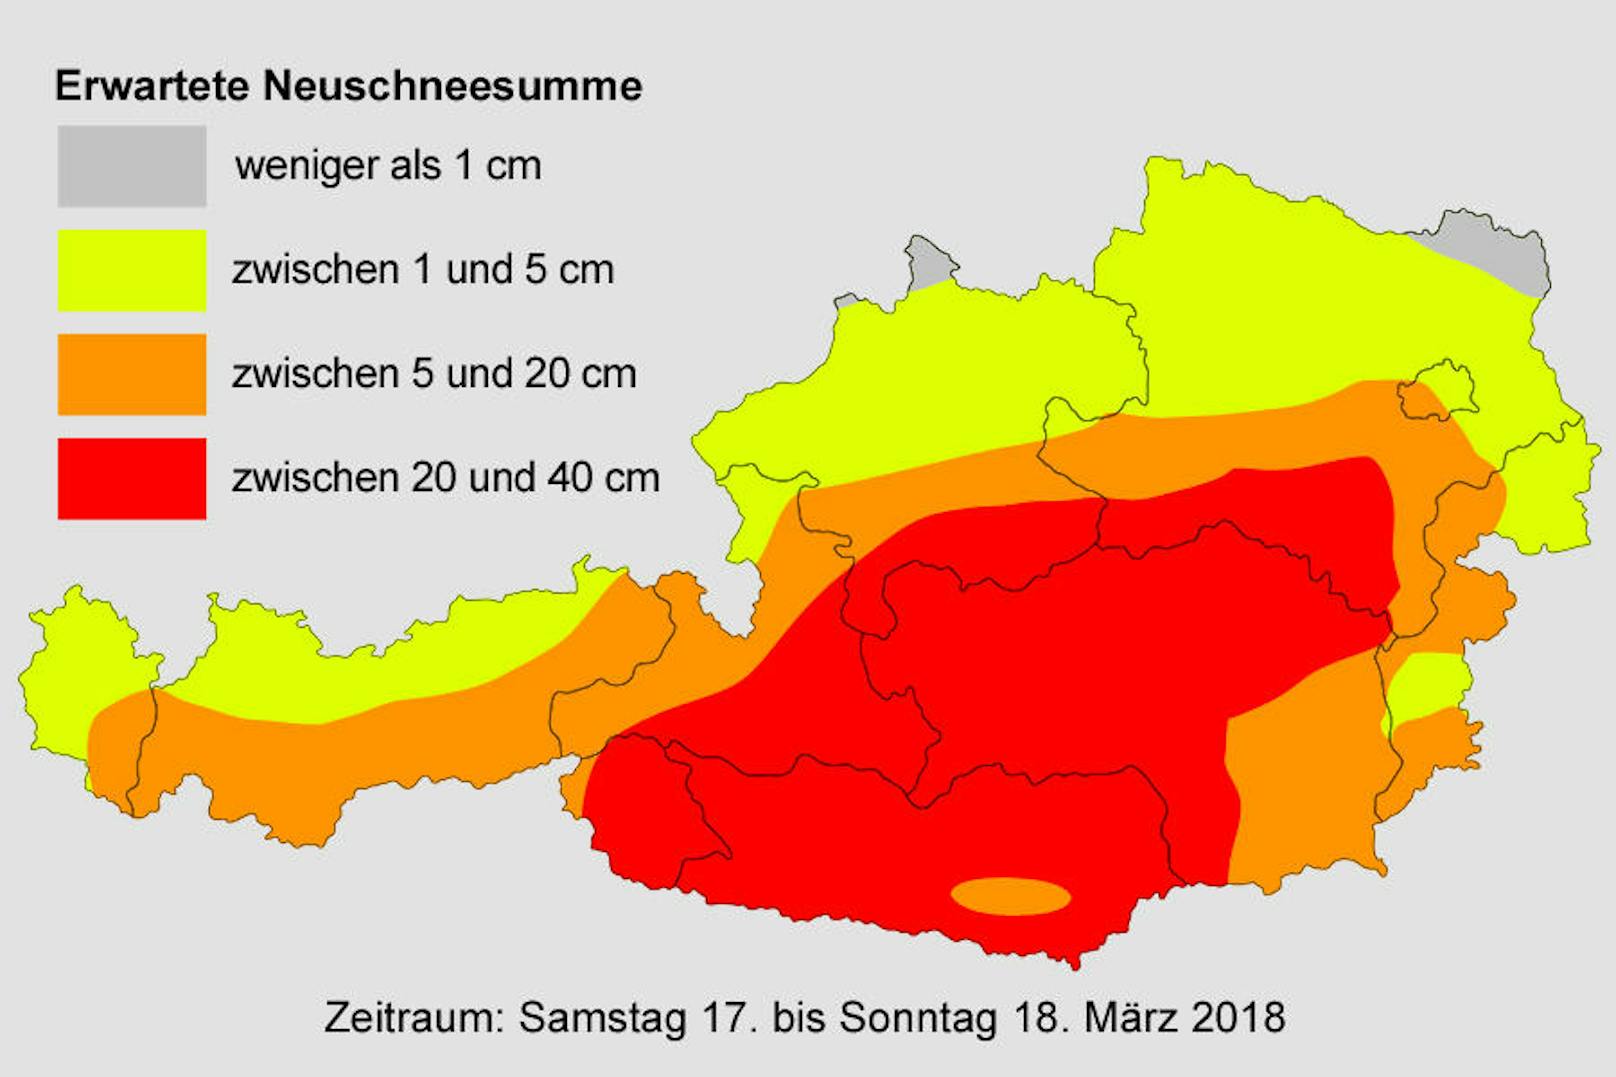 Laut dem Wetterblog "Österreichwetter" werden im beinahe dem gesamten Bundesgebiet am Wochenende (17. und 18. März) teils heftige Schneefälle erwartet. Nicht einmal das östliche Flachland bleibt verschont.